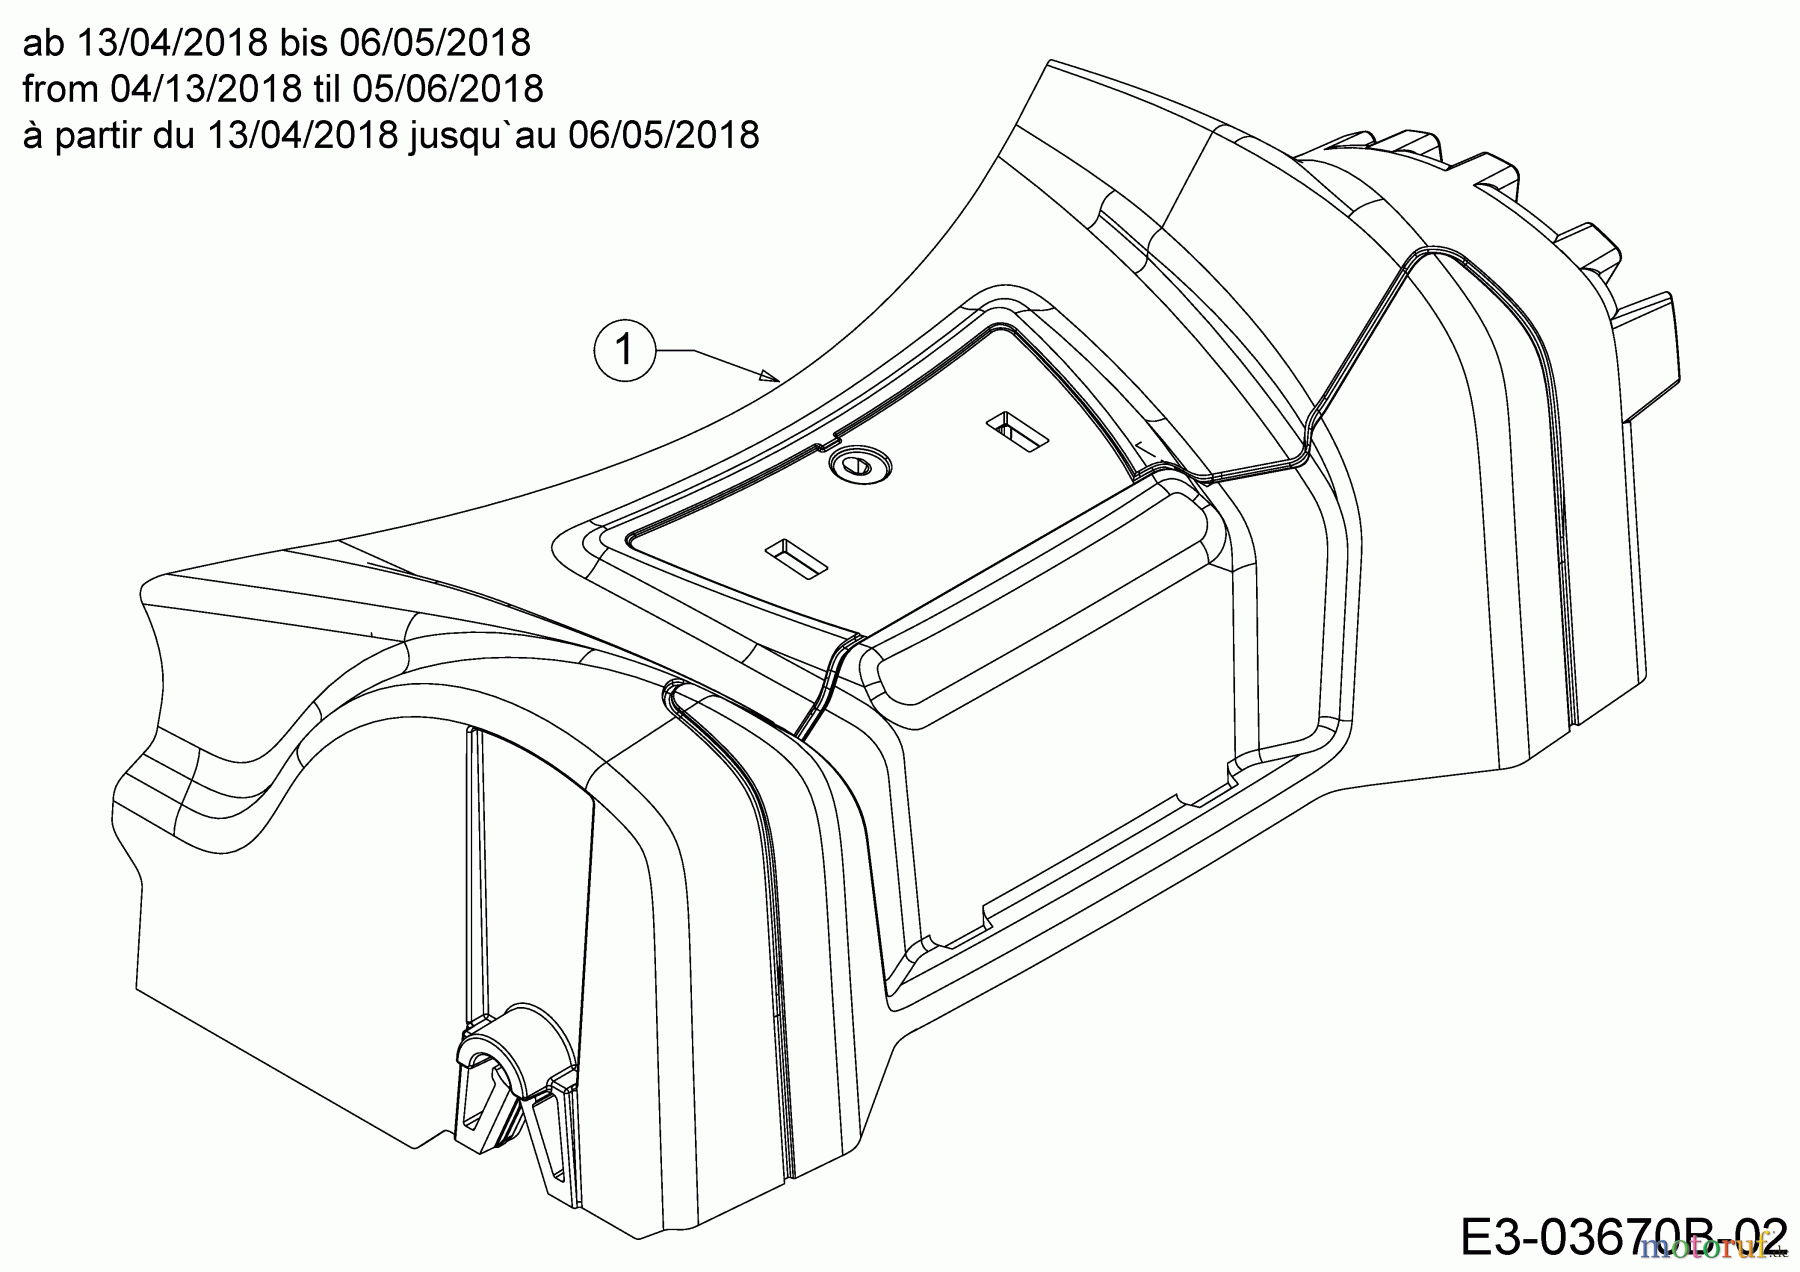  MTD Motormäher P 46 B 11A-TABG600  (2018) Abdeckung Vorderachse ab 13/04/2018 bis 06/05/2018